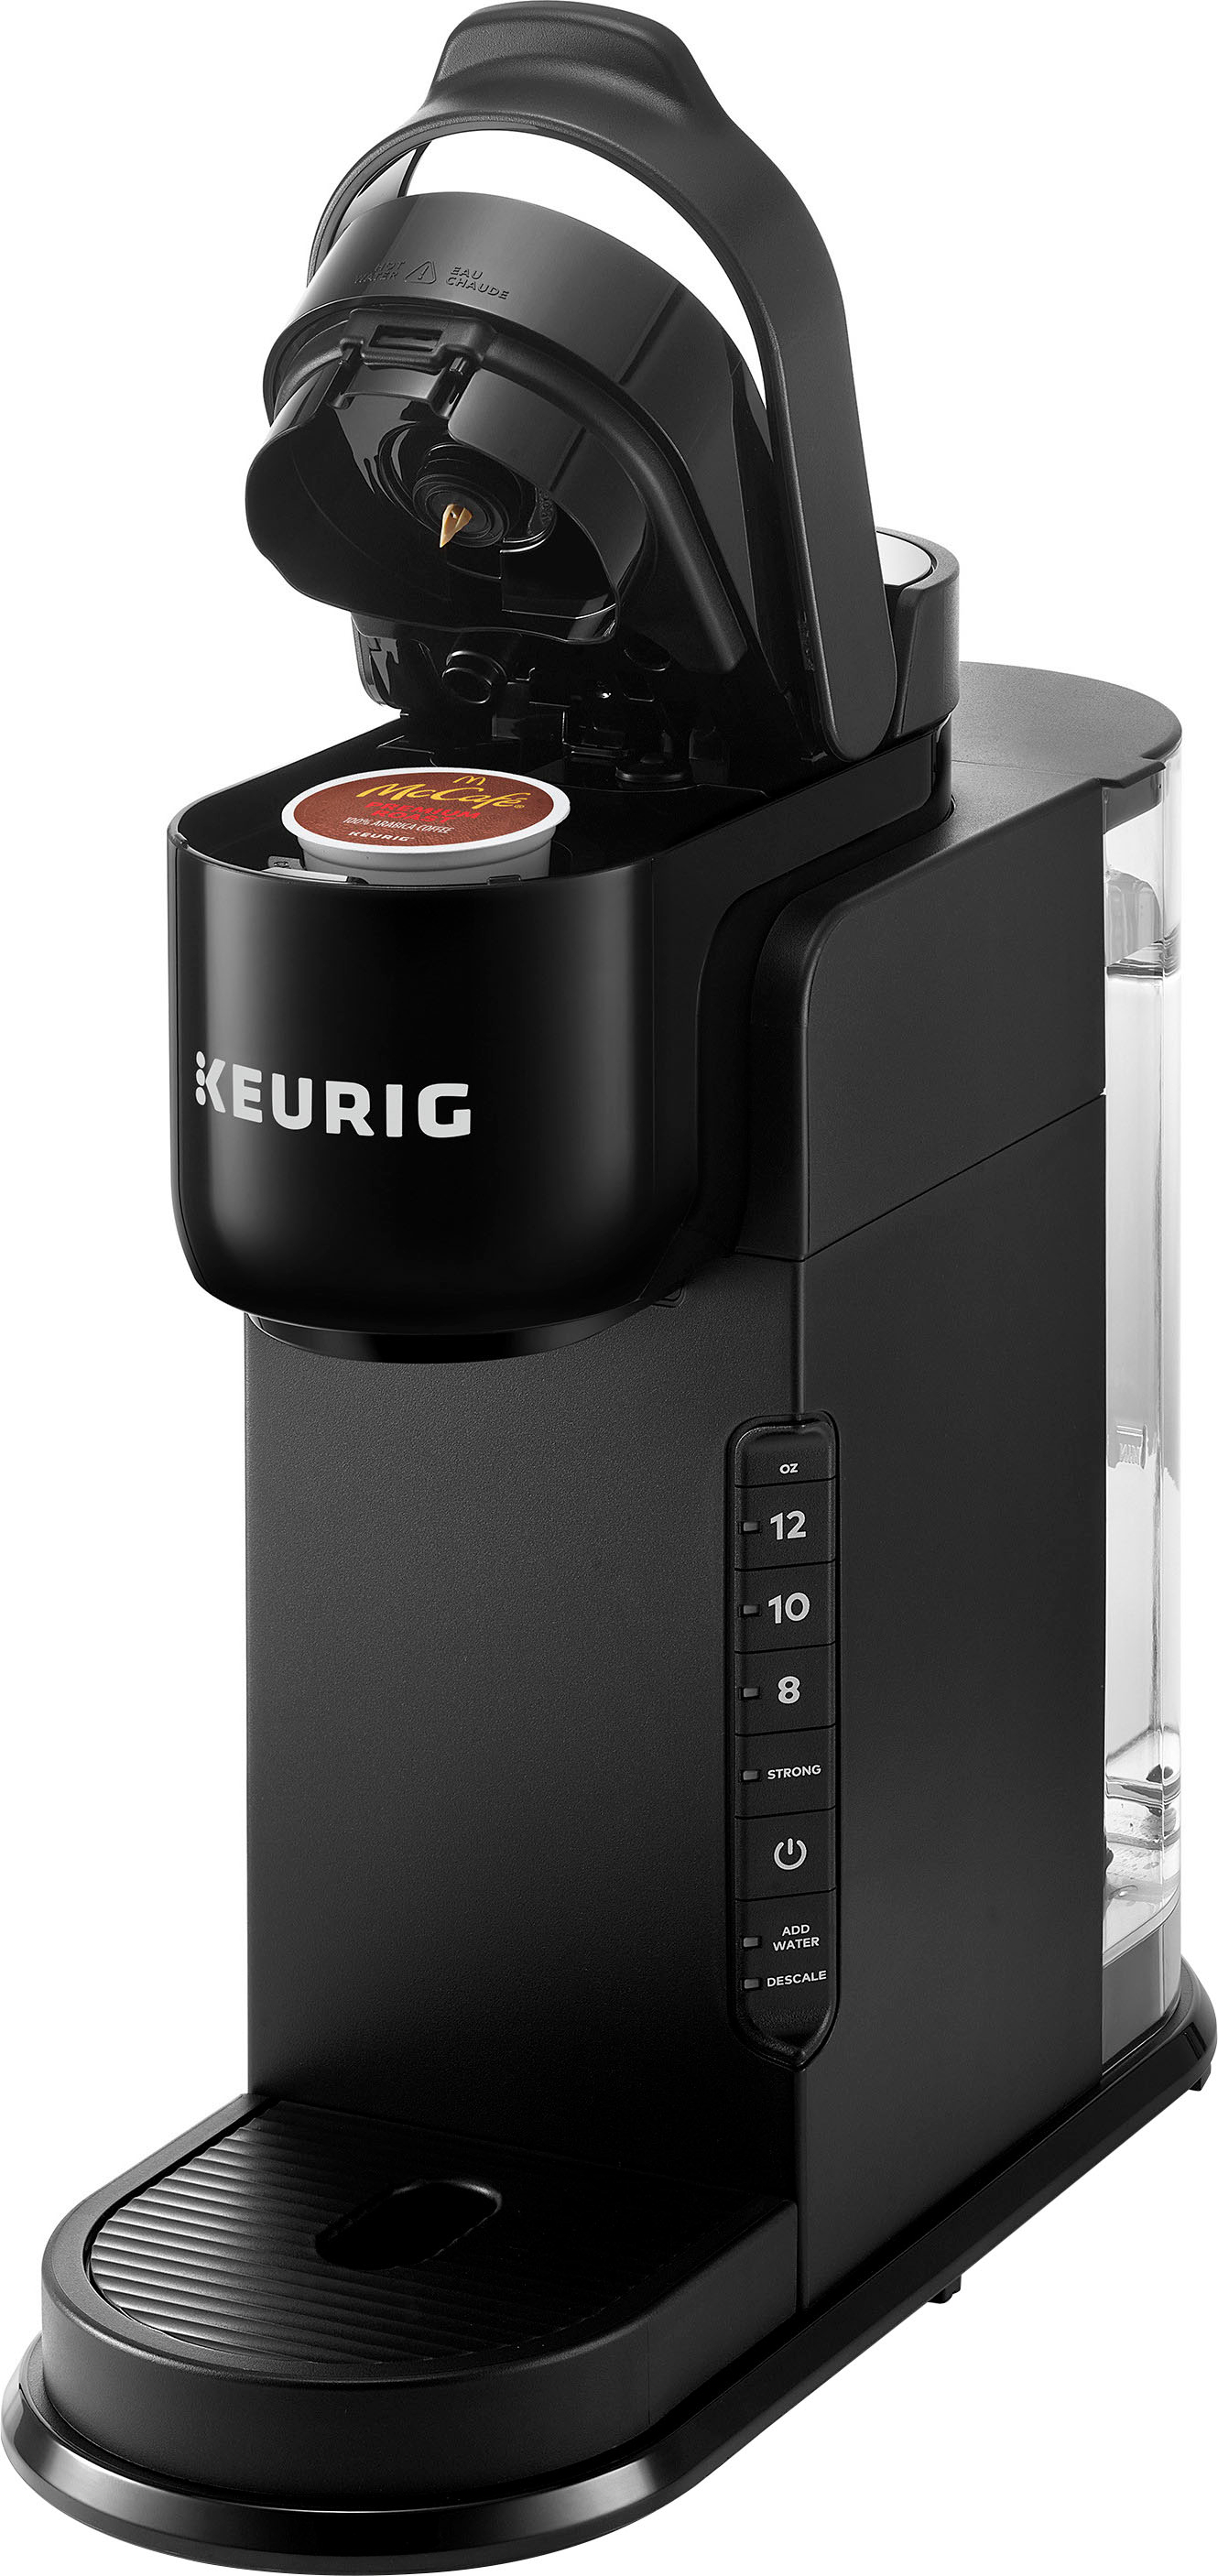 Best kitchen deal: Keurig K-Express coffee maker on sale for $59.99